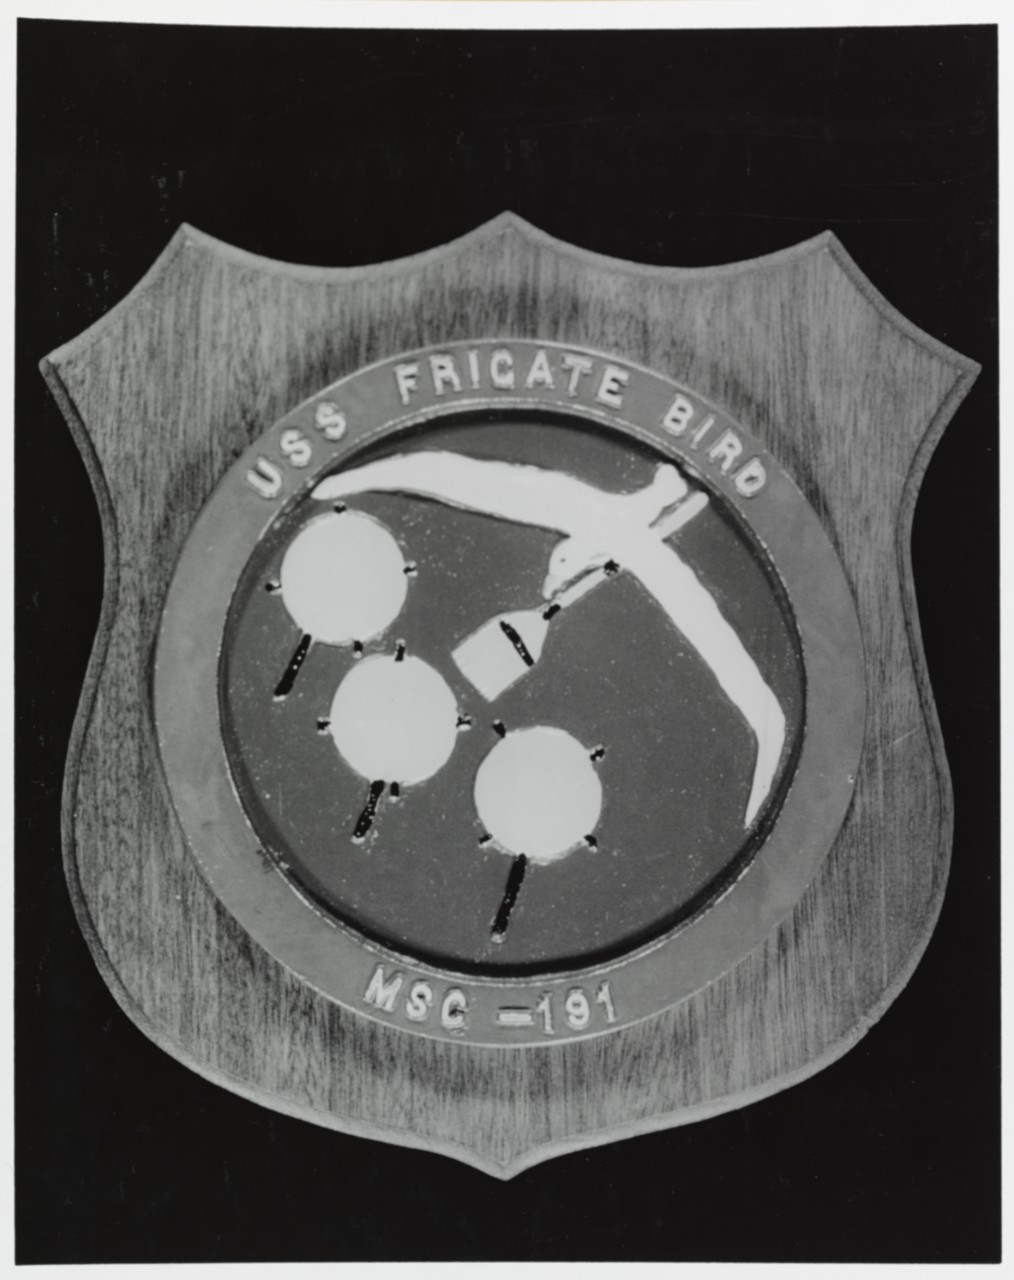 Insignia: USS FRIGATE BIRD (MSC-191)